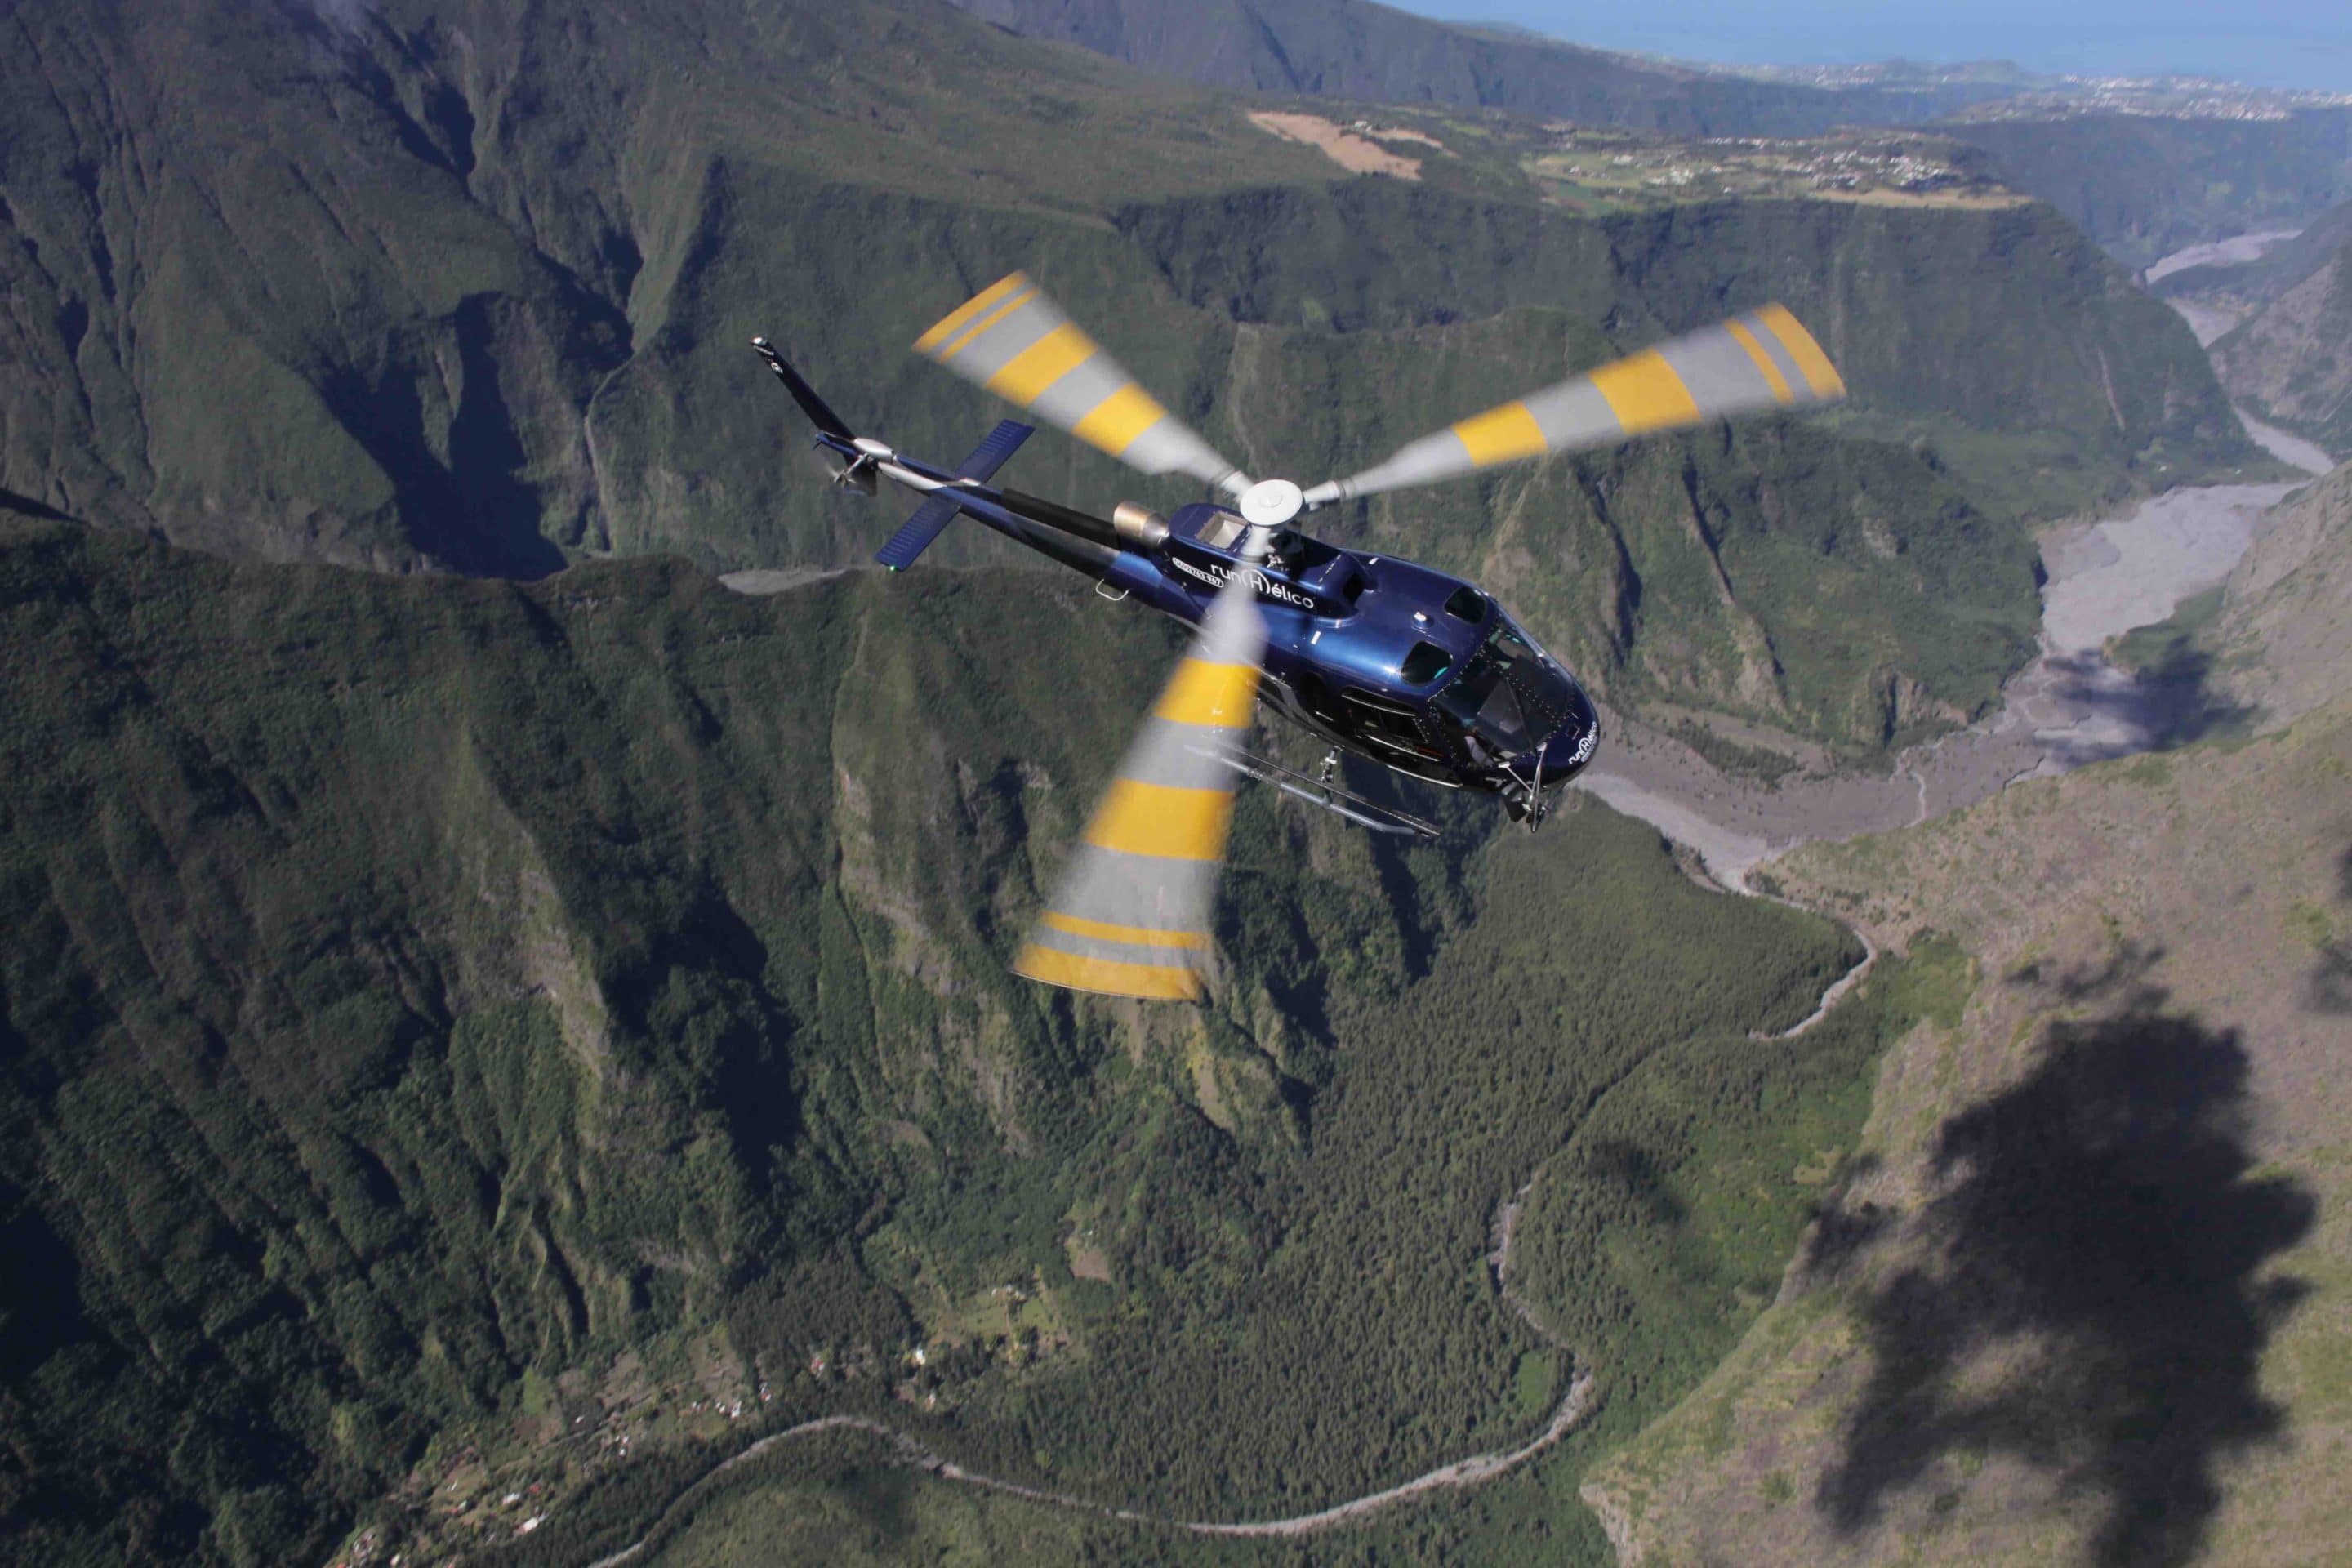 rivière des remparts : itineraire pour le survol en hélicoptère du volcan de la Réunion